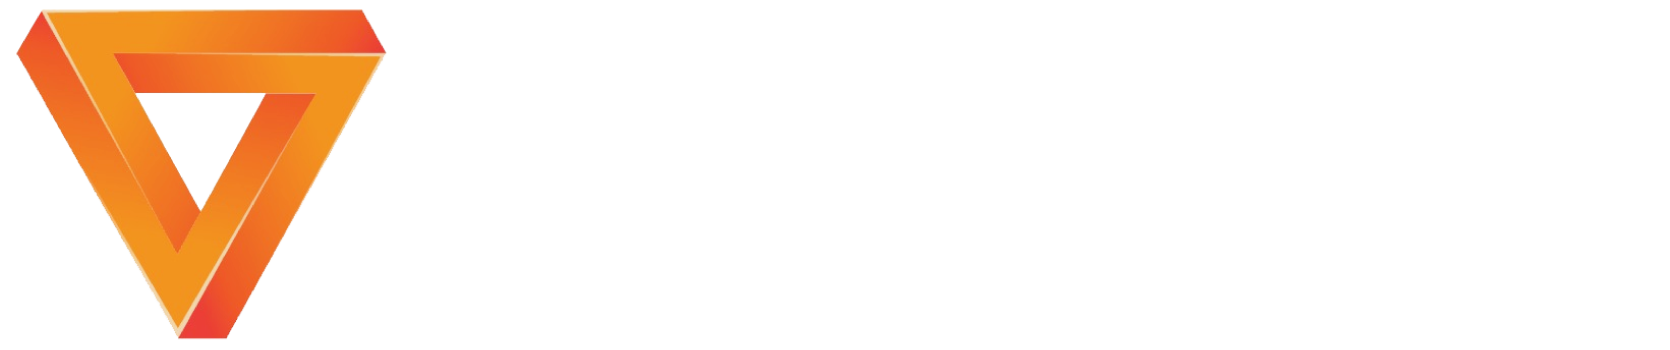 Viking Energia e TI Logomarca Branca